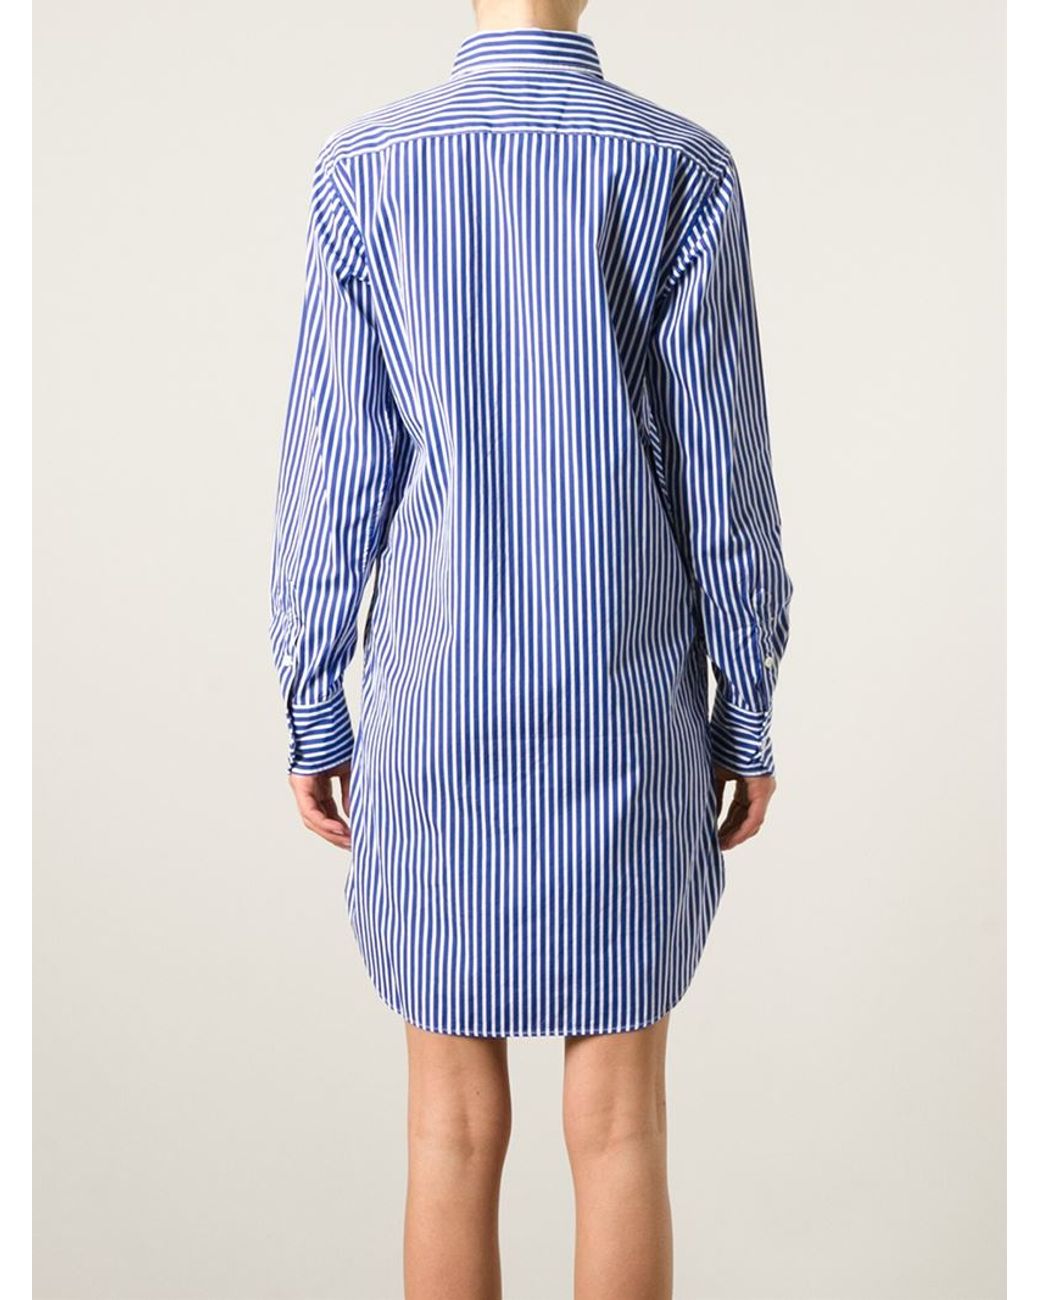 Polo Ralph Lauren Striped Shirt Dress in Blue | Lyst